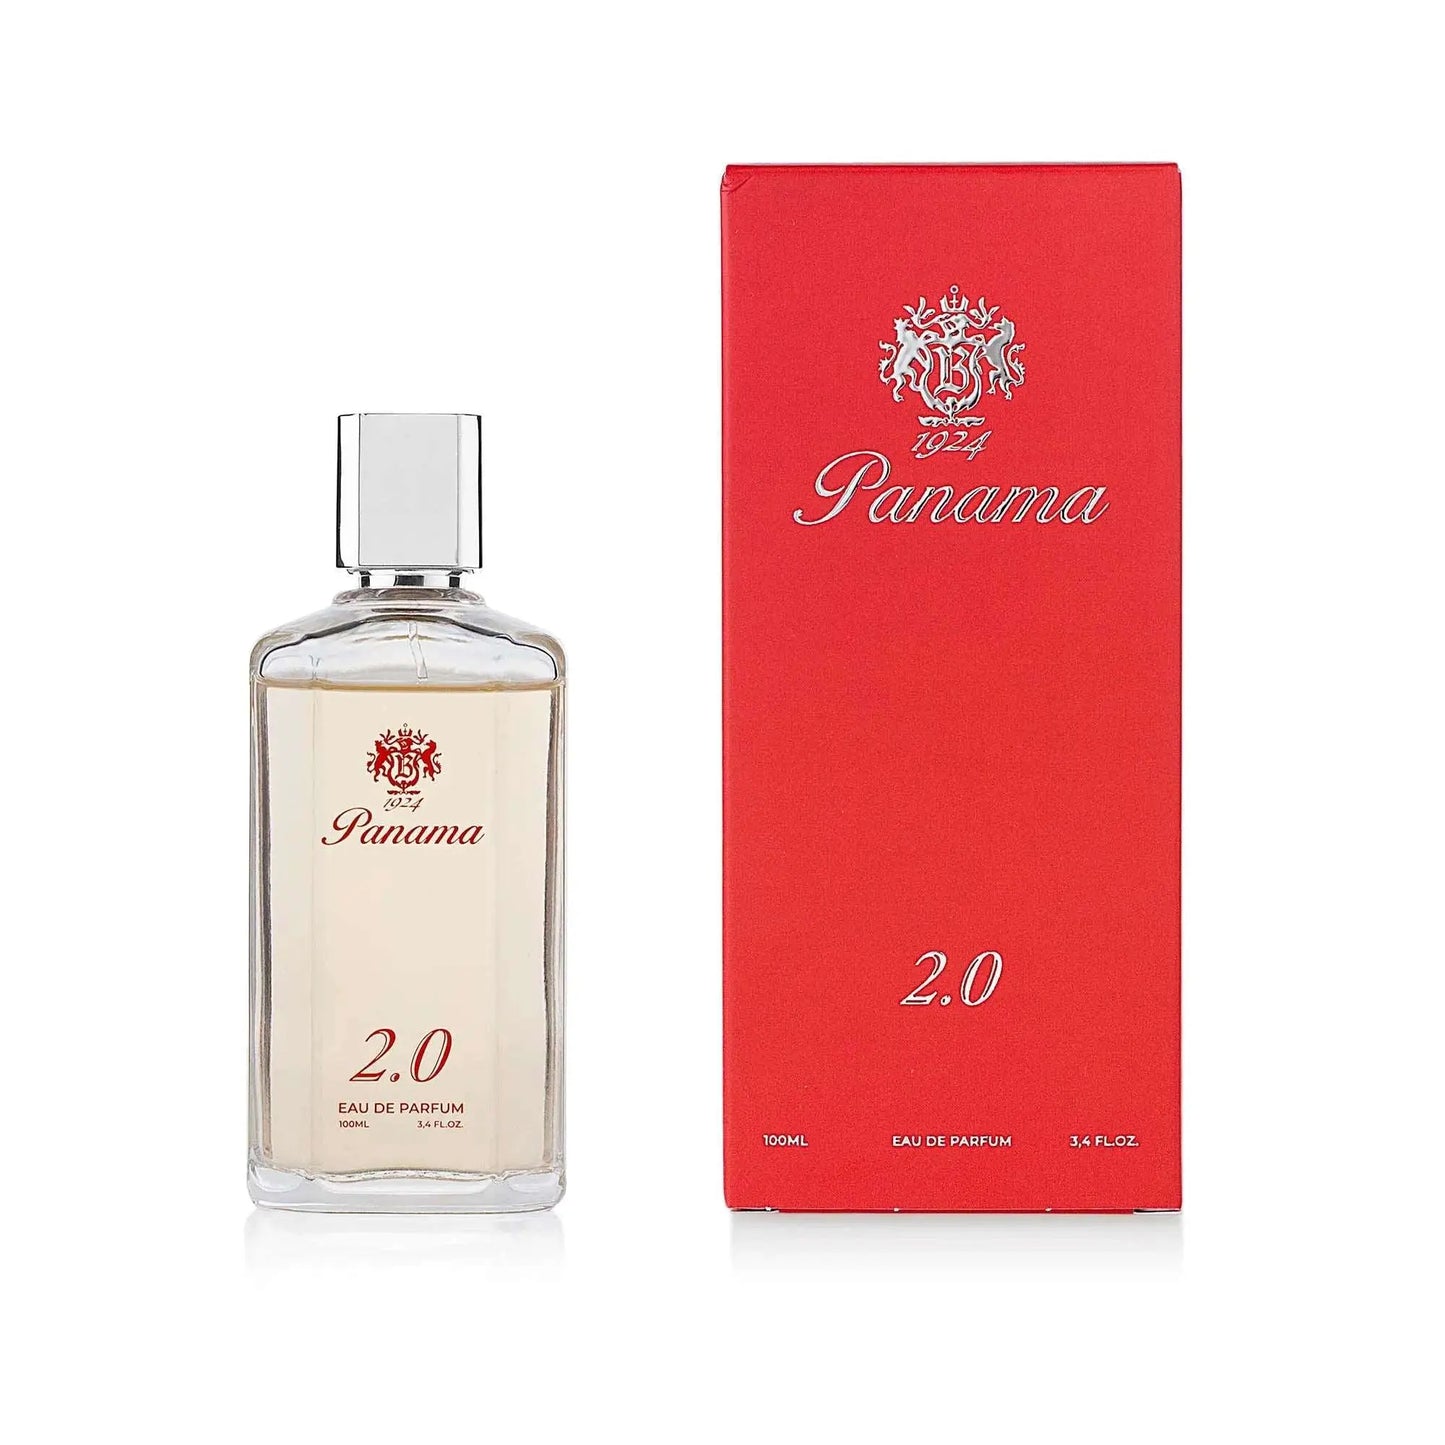 panama 1924 2.0 parfum fles en doos